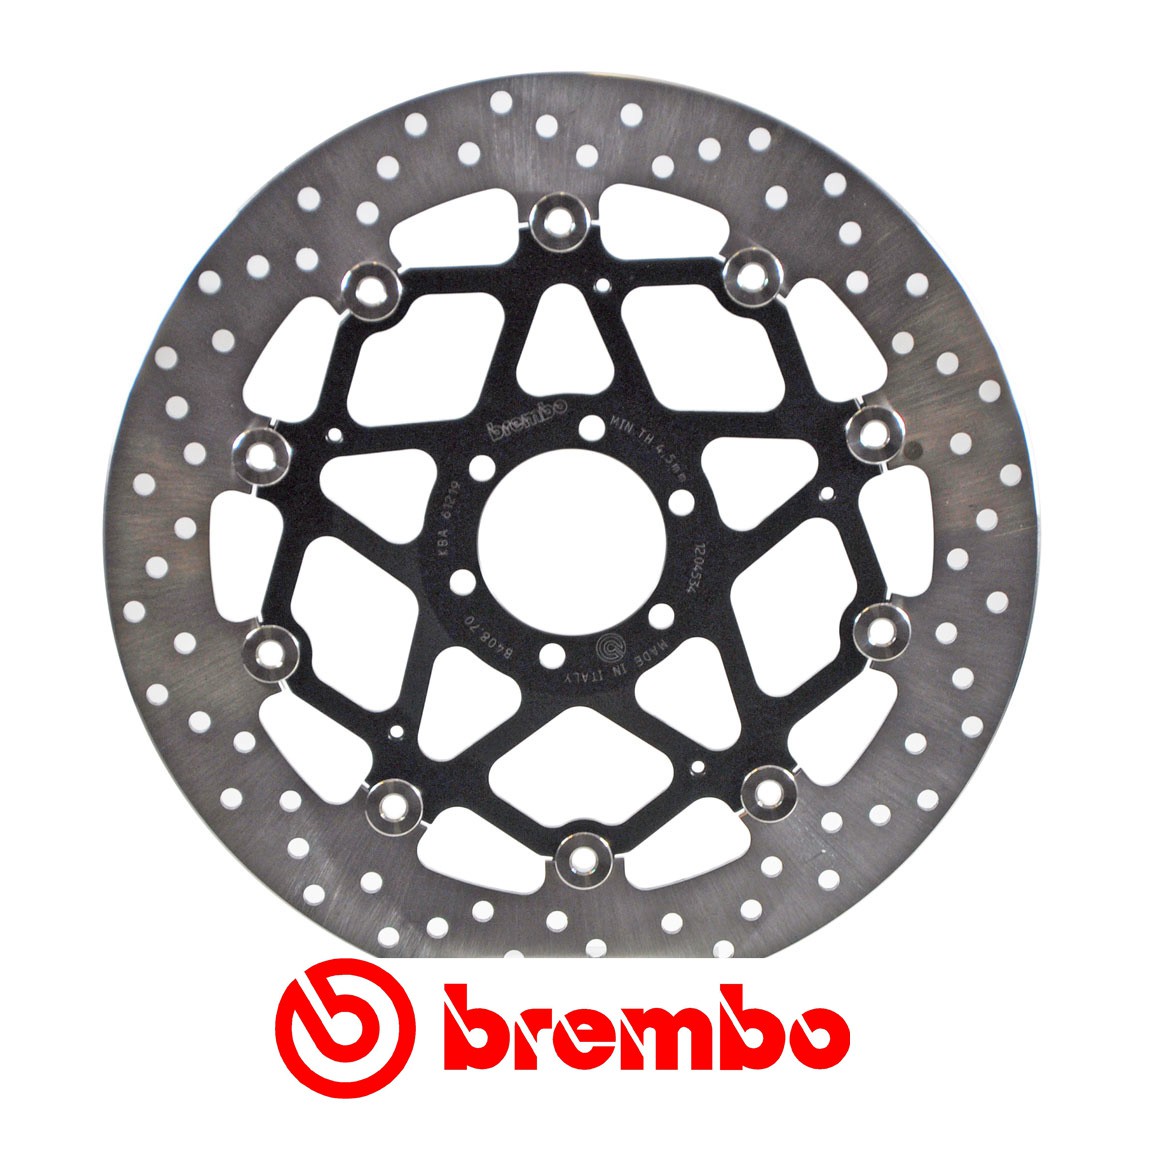 Disque de frein avant Brembo pour Benelli BN 600 (13-16) BN 600 GT (13-17)